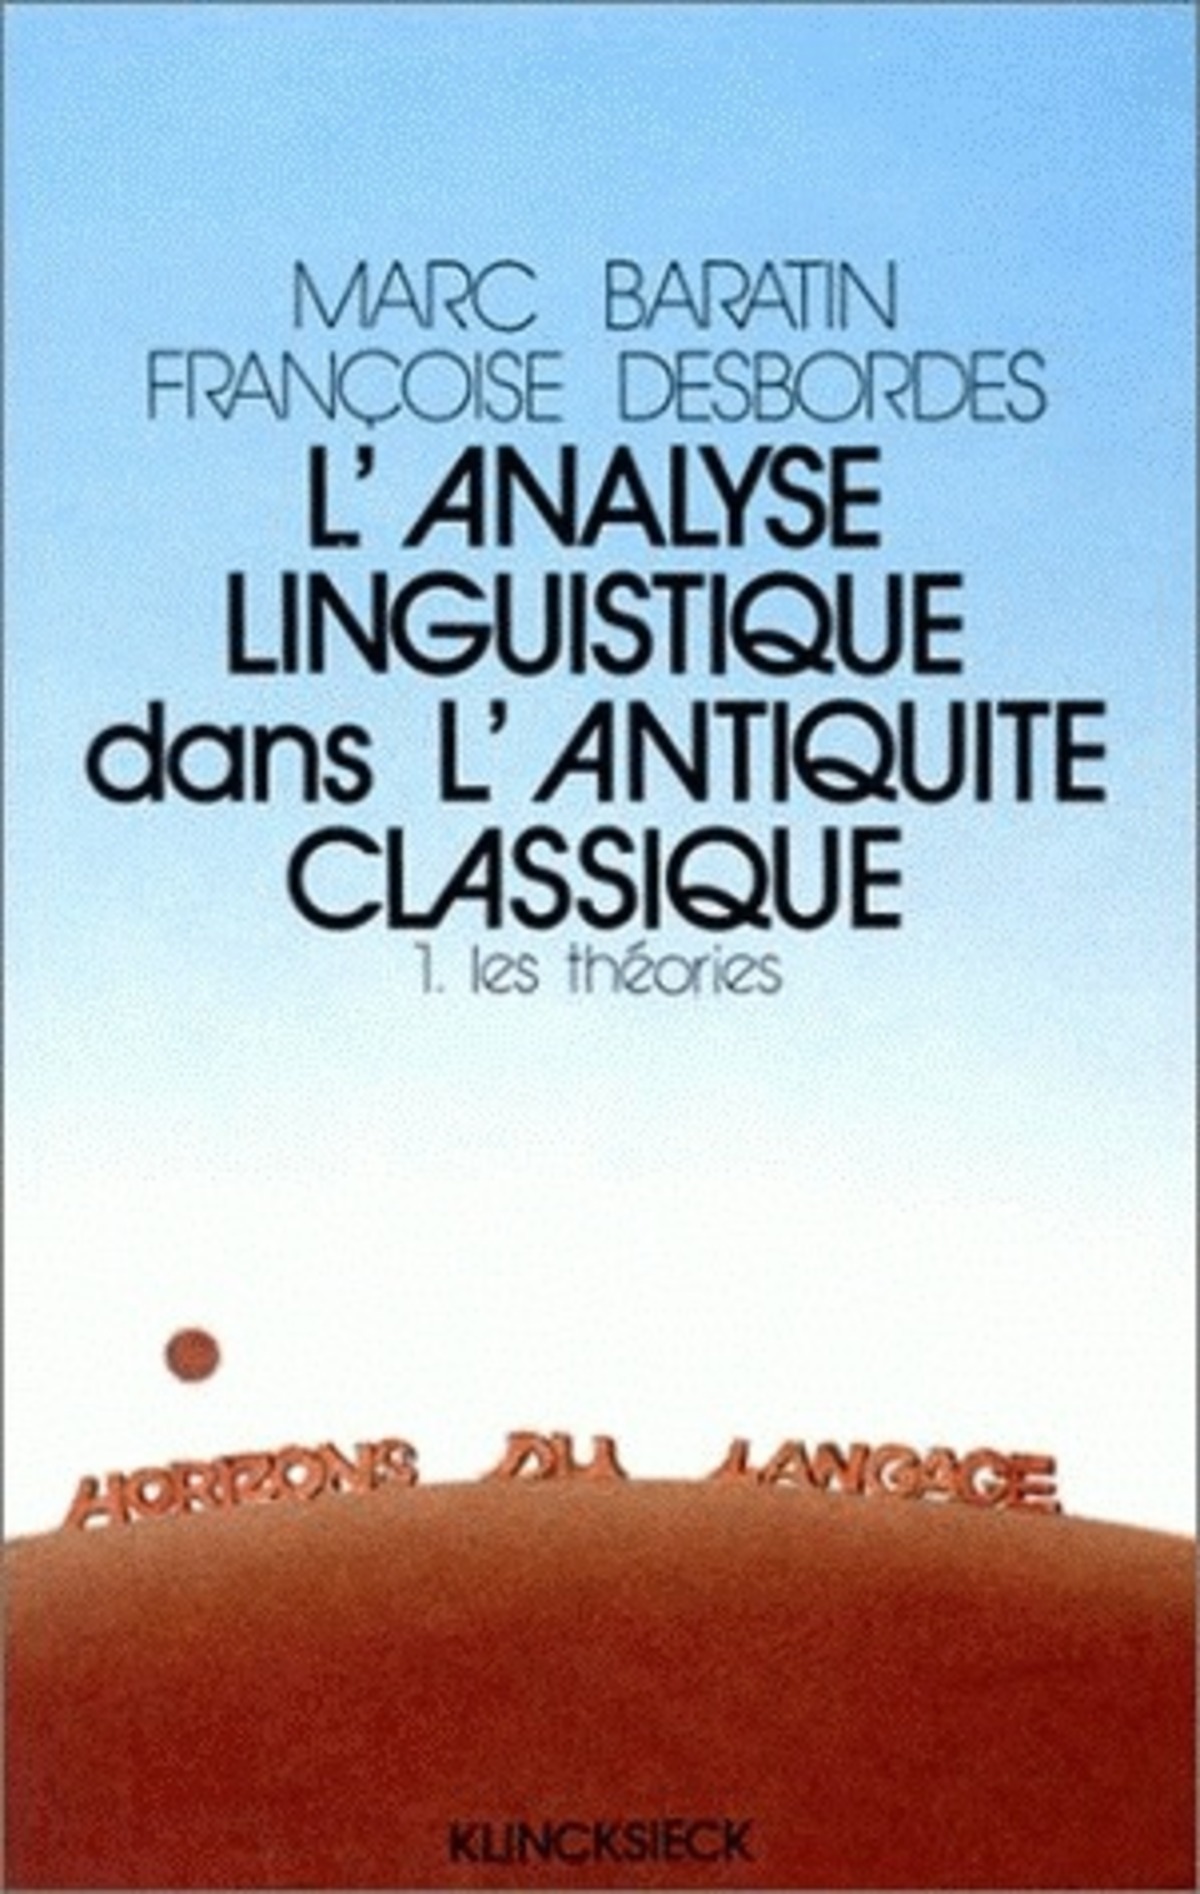 L'Analyse linguistique dans l'Antiquité classique. 1. Les théories